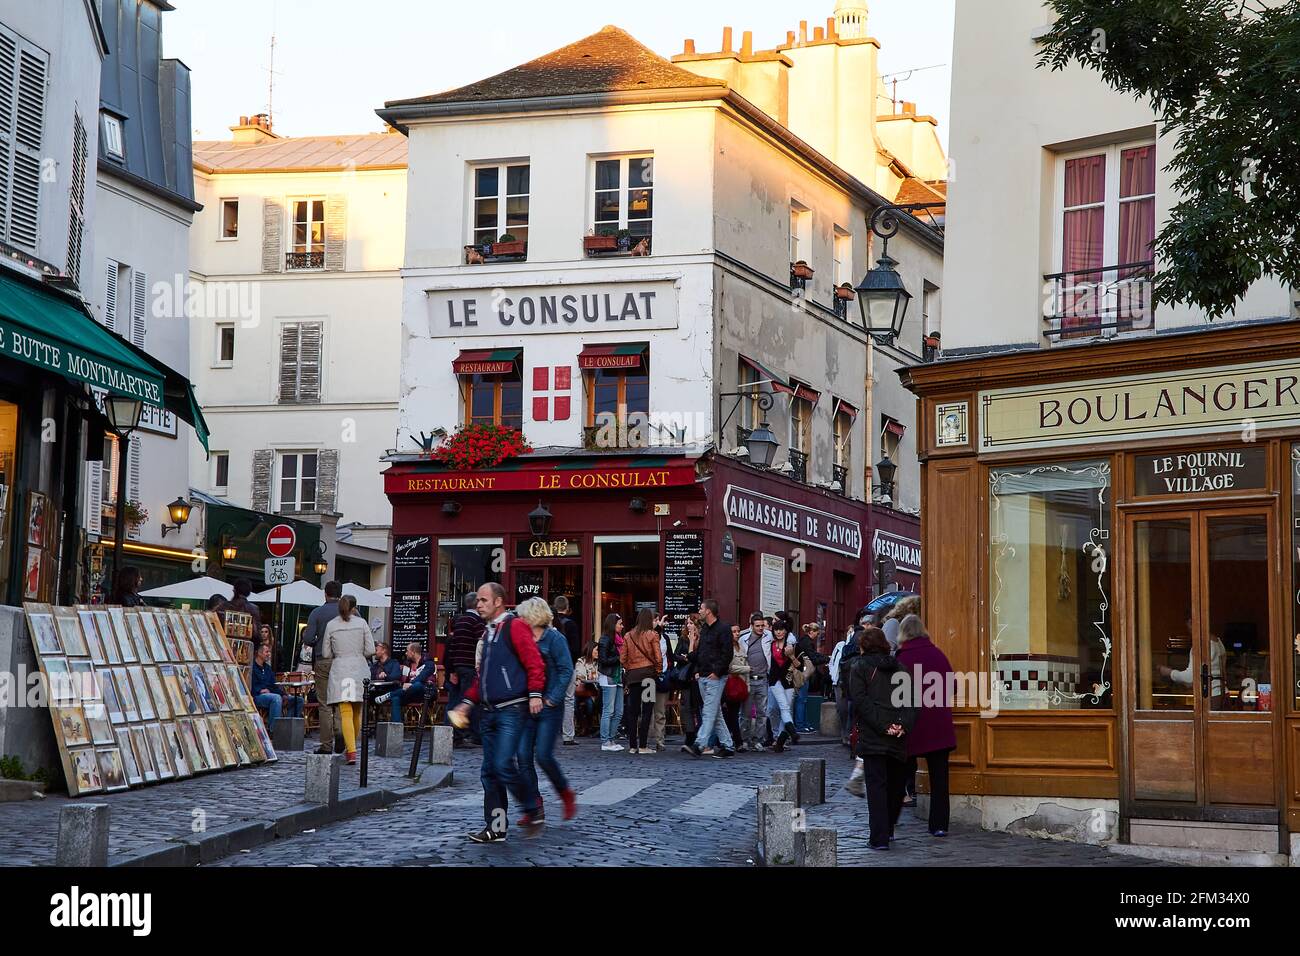 Touristes et Parisiens se détendent et explorent les restaurants et les rues du quartier branché de Montmartre, Paris, France Banque D'Images